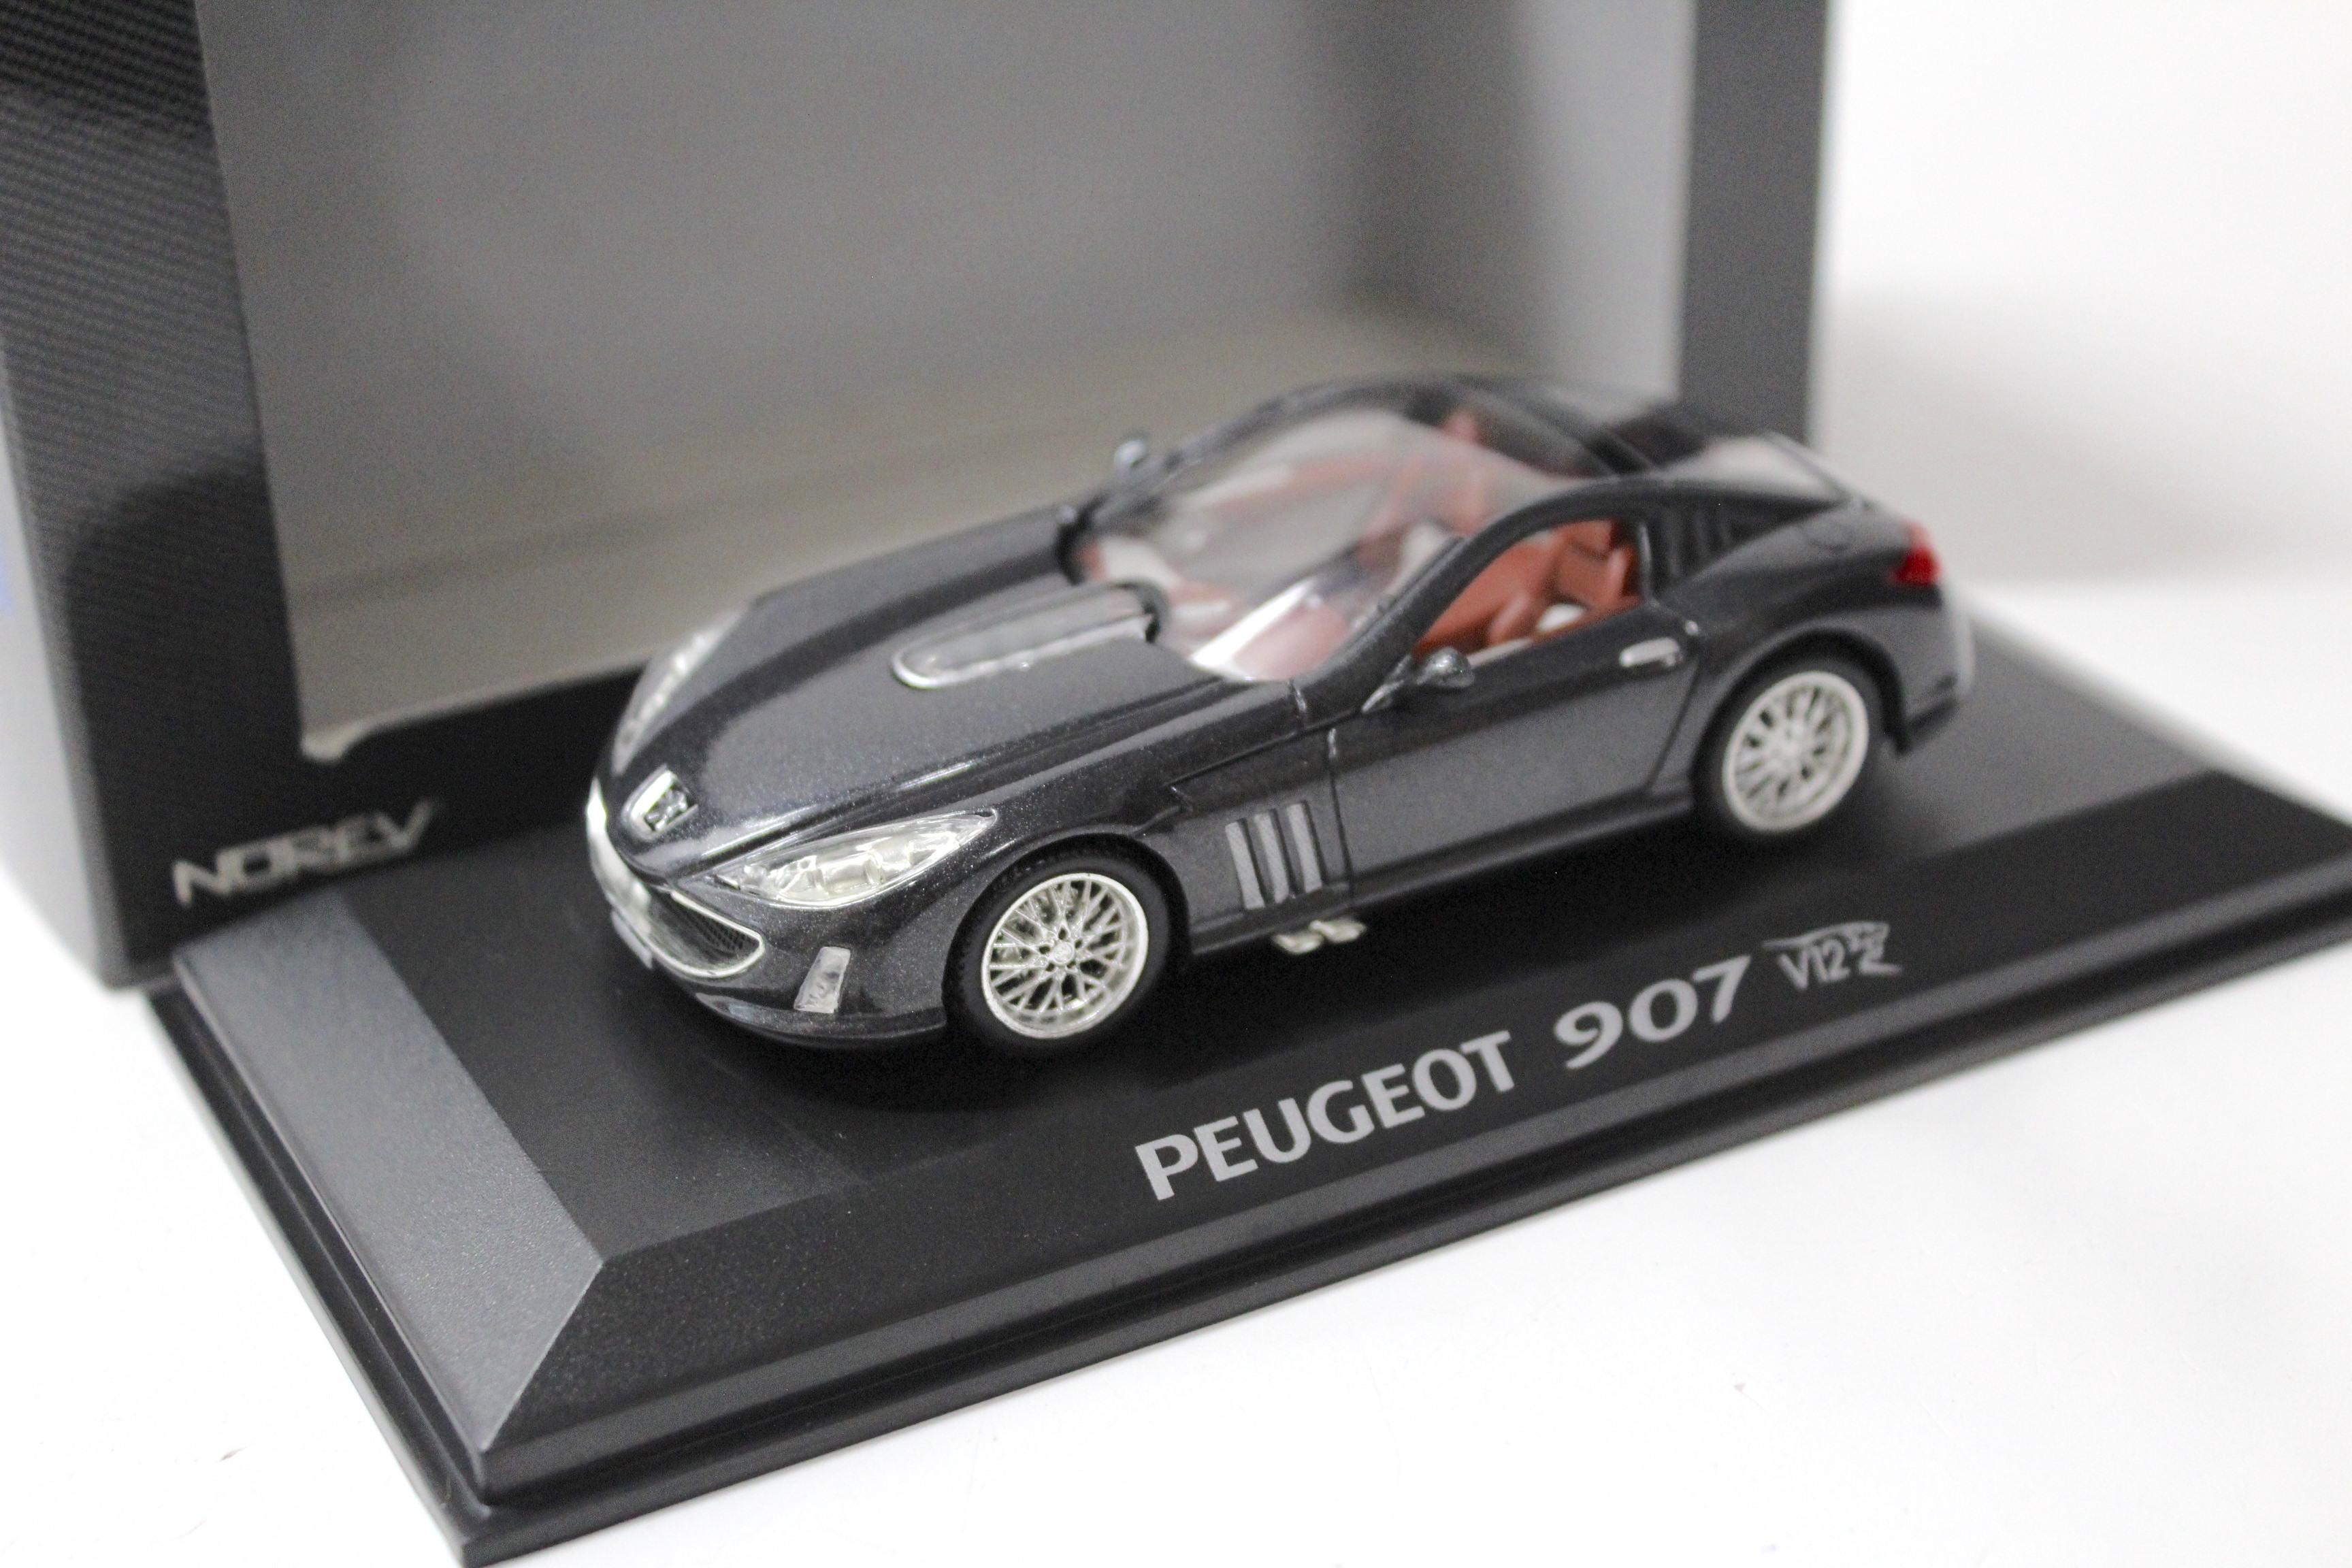 1:43 Norev Peugeot 907 V12 Concept Car dark grey